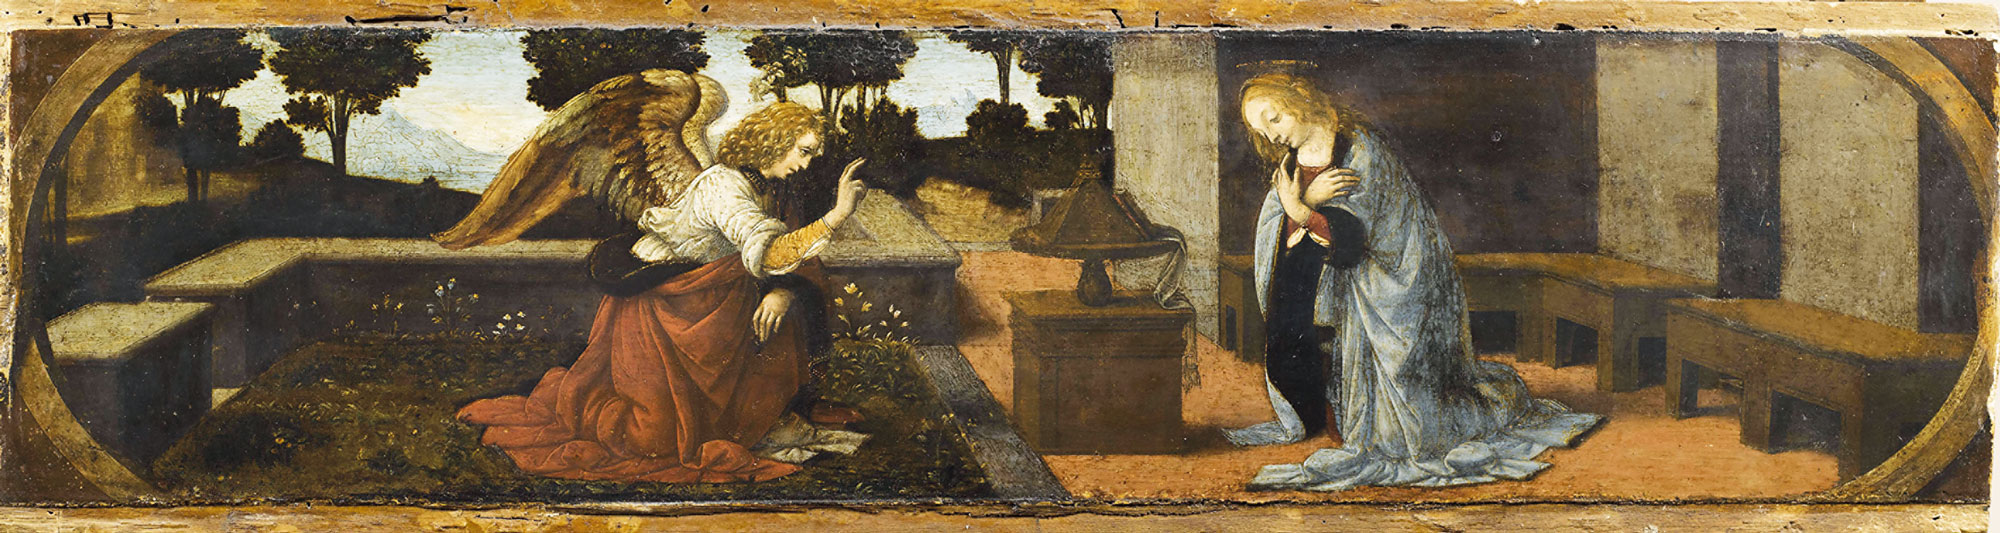 Leonardo da Vinci (e Lorenzo di Credi?) - Annunciazione olio su tavola di pioppo, anno 1478-1480 circa, 16x60 cm. Parigi, Musée du Louvre, Département des Peintures, già in Collezione Campana, Roma, entrato al Louvre nel 1863